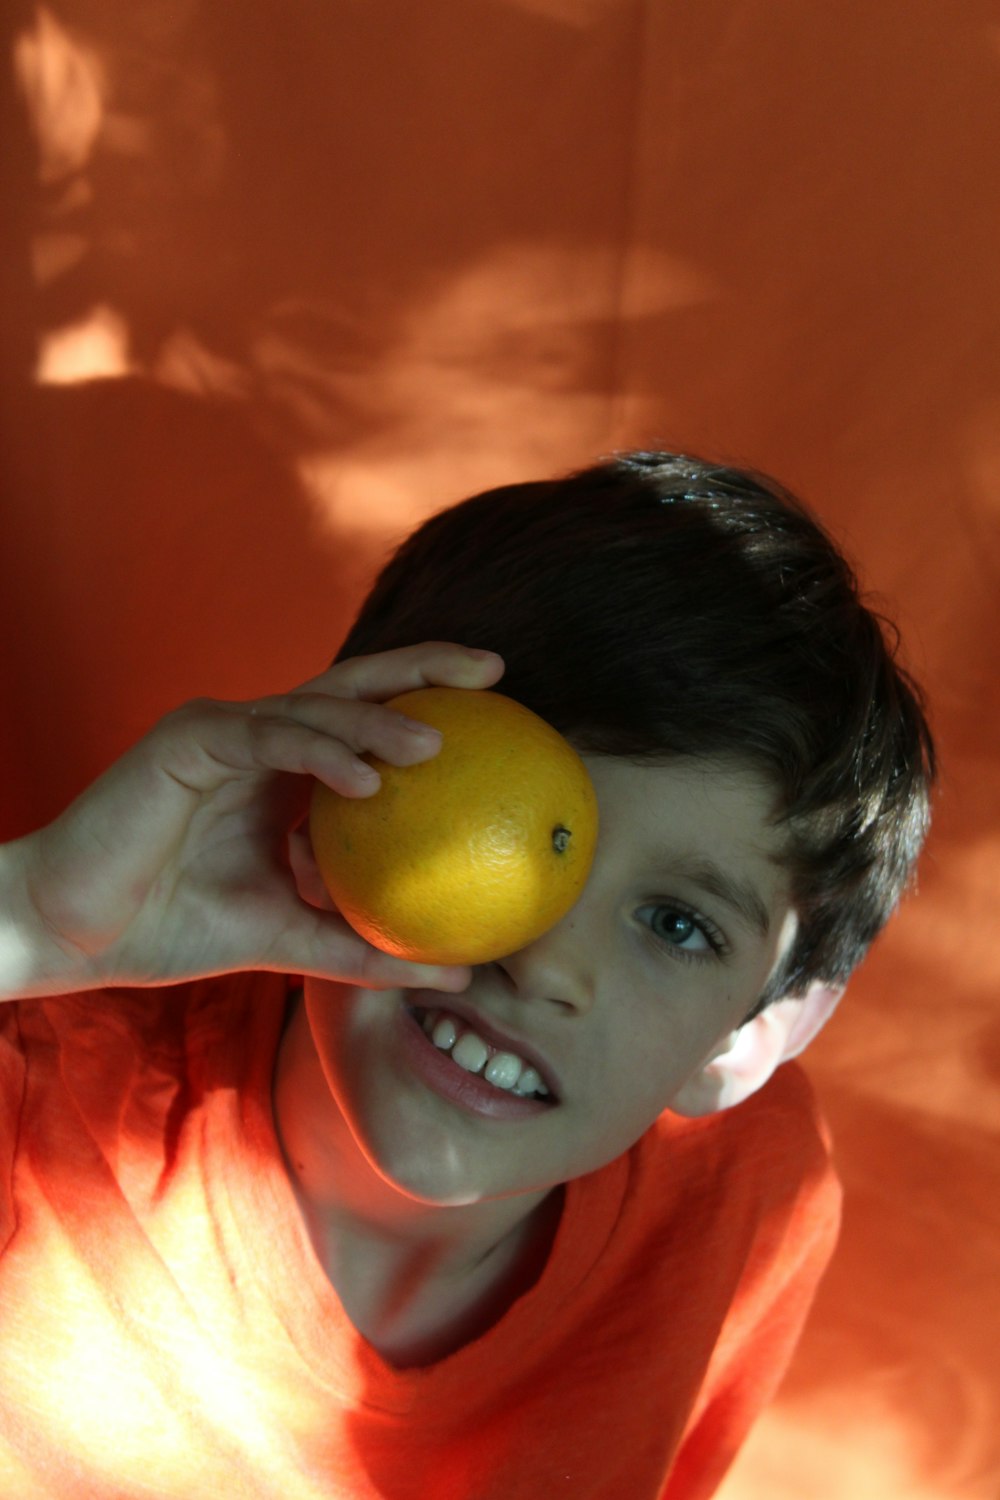 boy in orange shirt holding yellow fruit